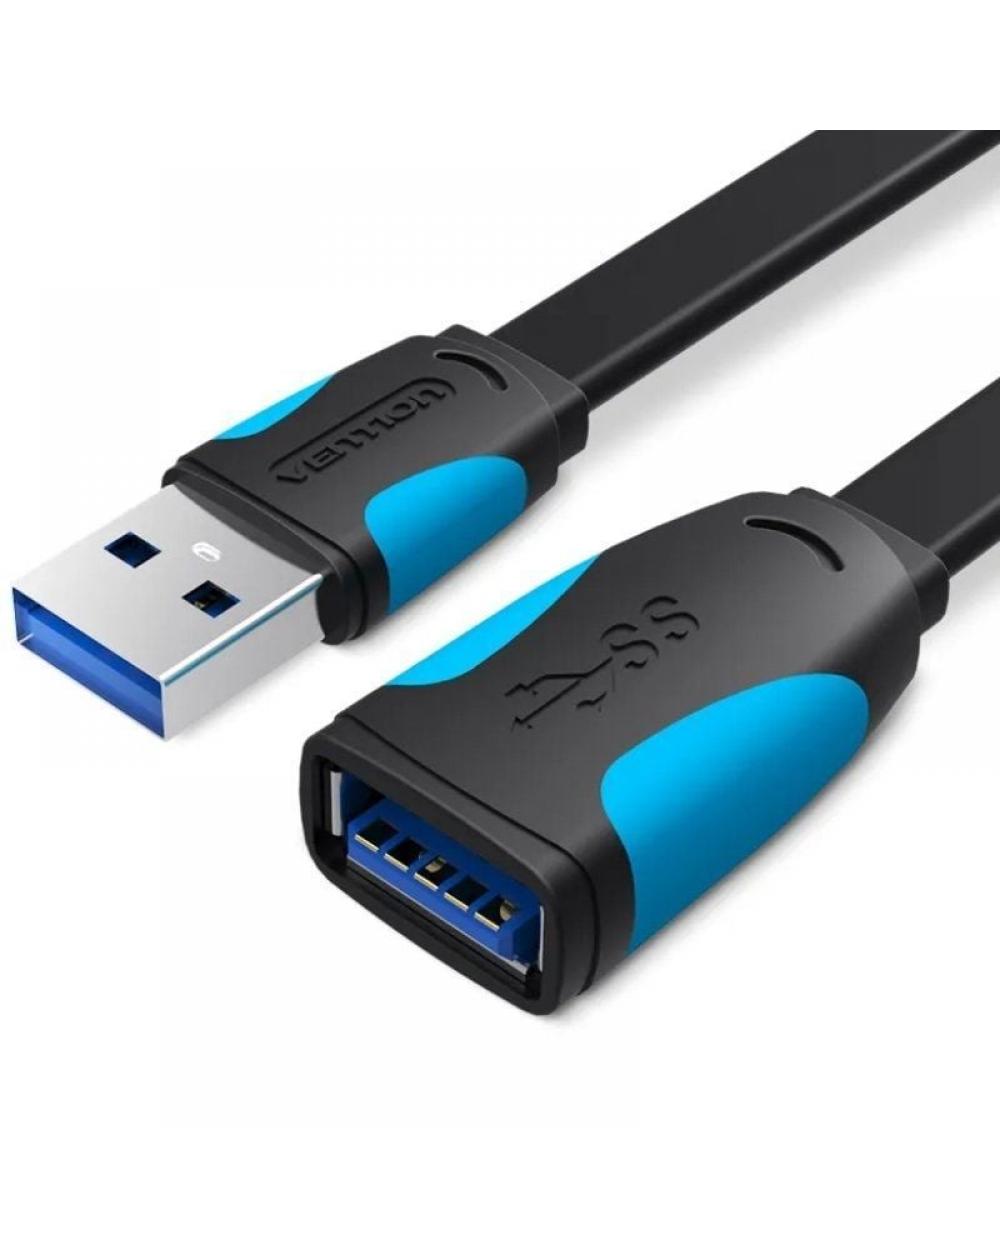 Cable Alargador USB 3.0 Vention VAS-A13-B100/ USB Macho - USB Hembra/ 1m/ Negro y Azul